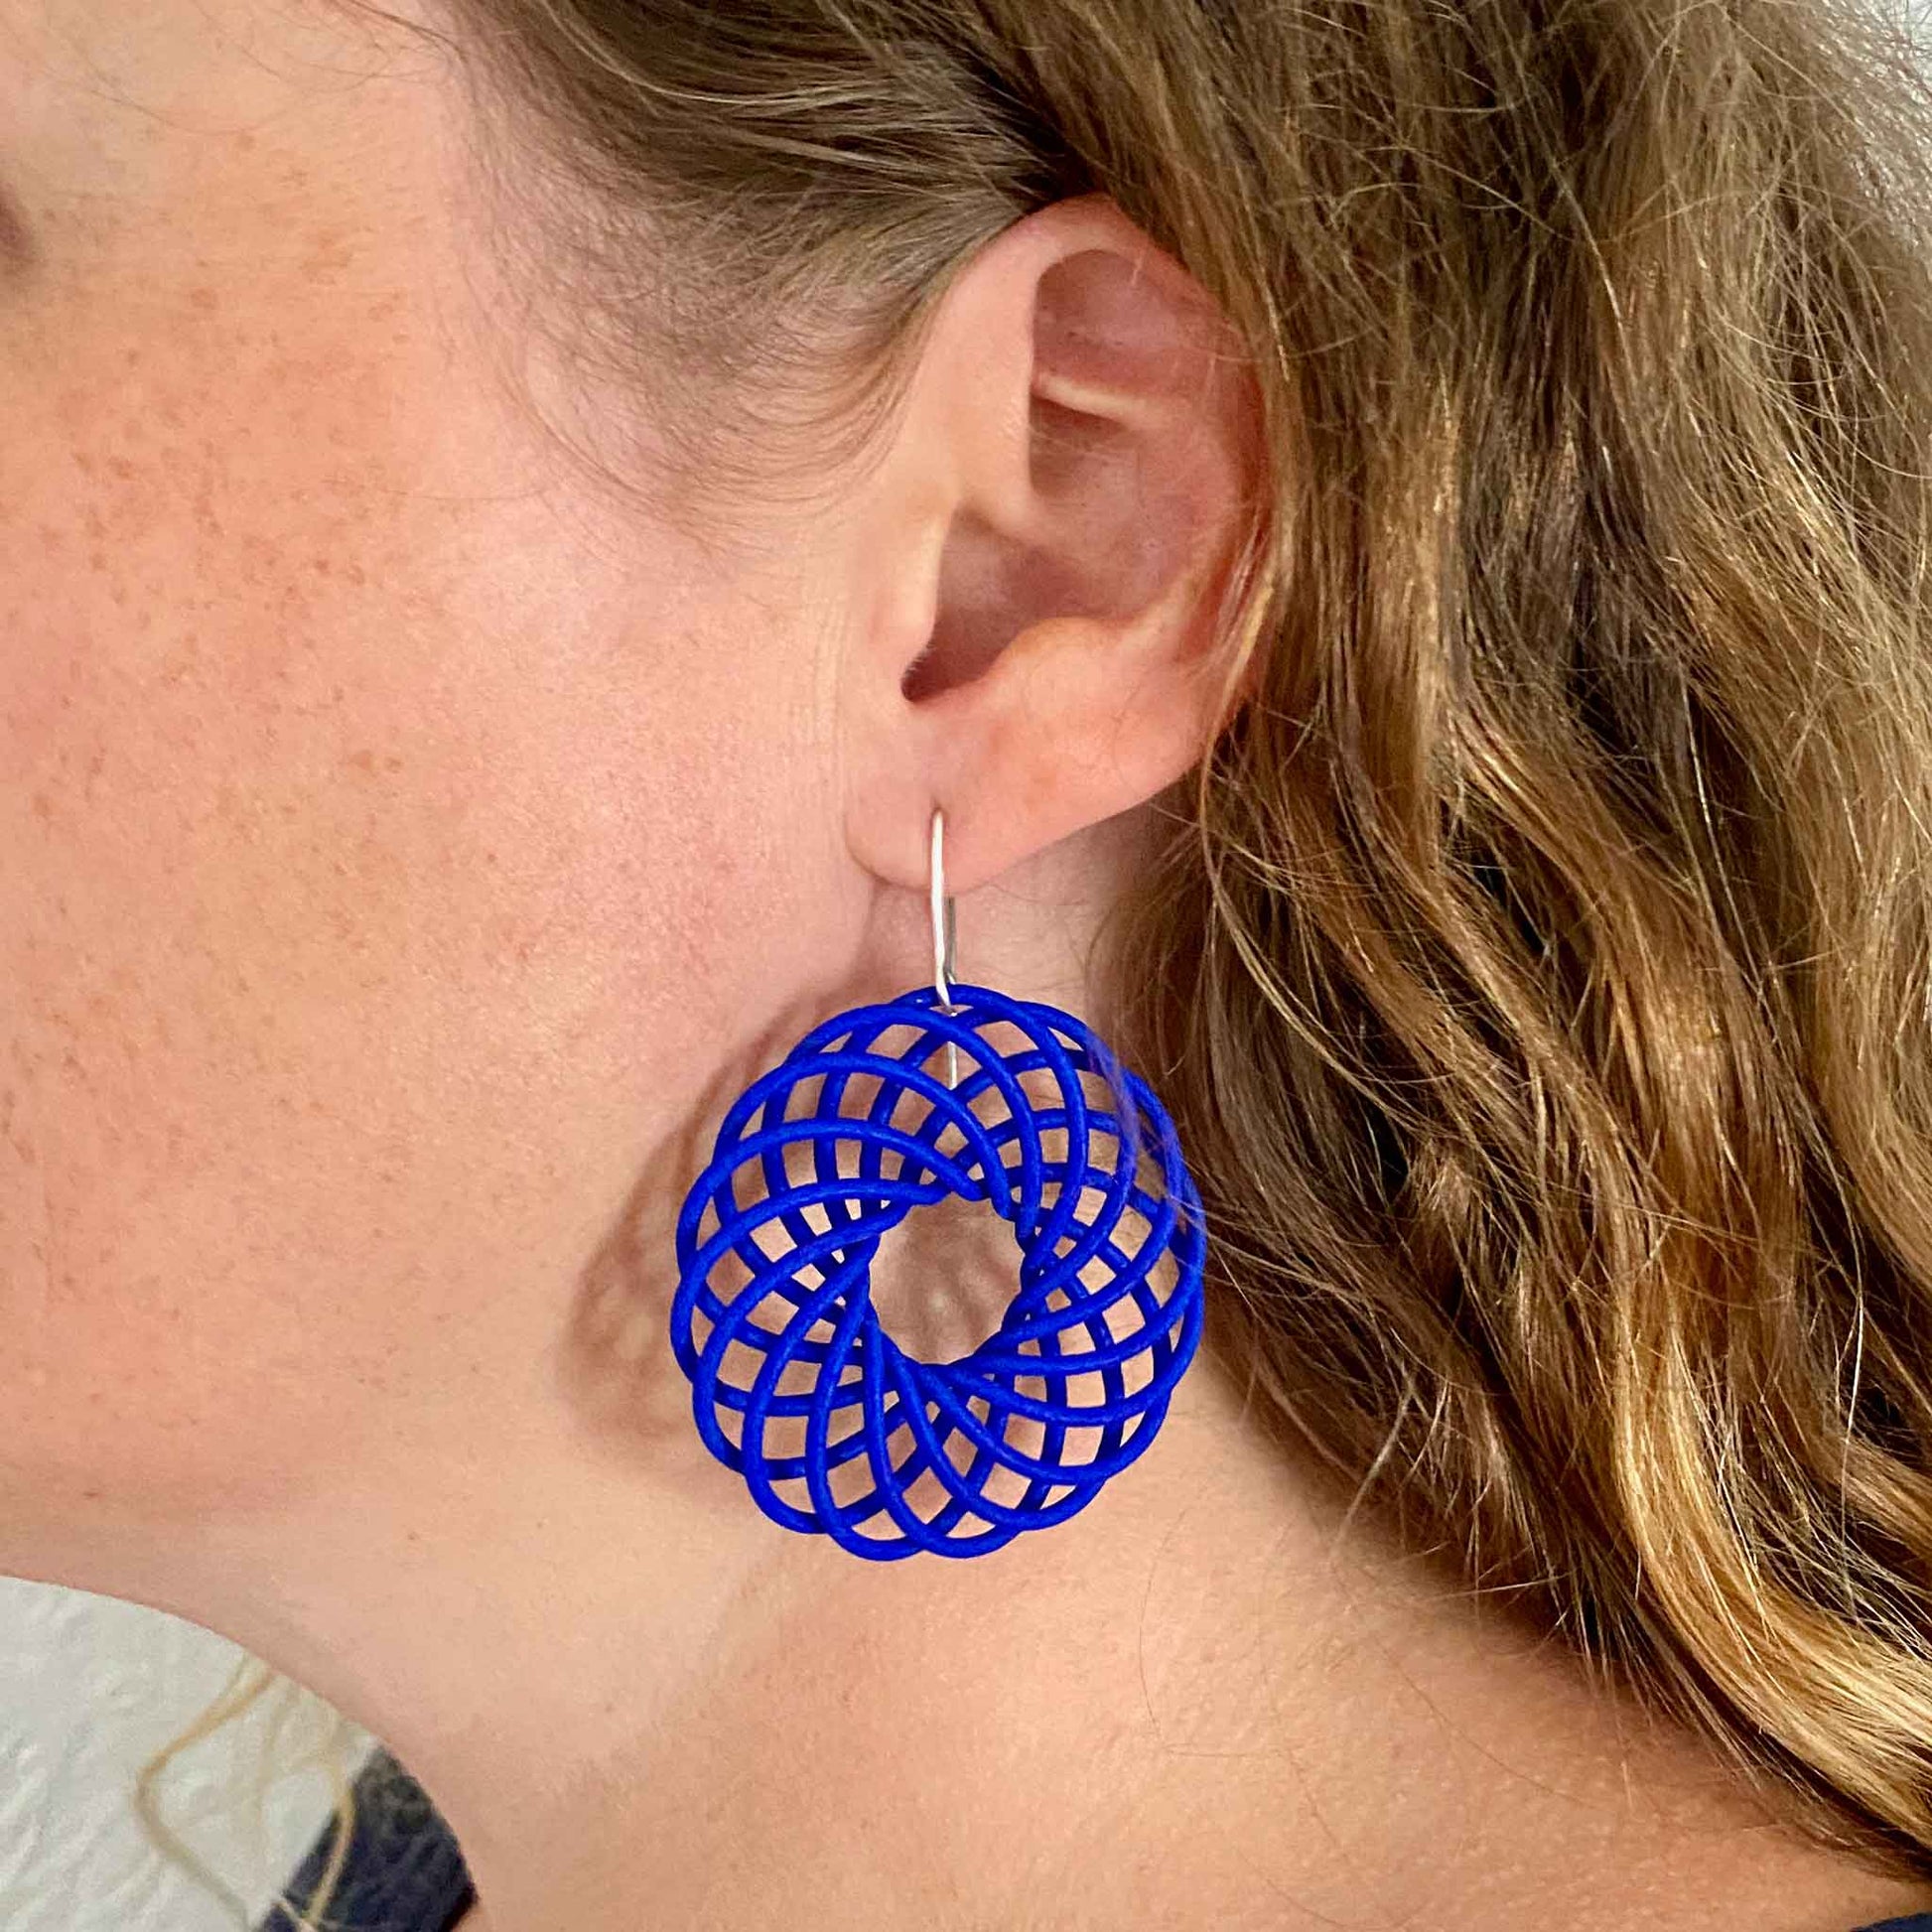 Katy wearing large blue Vortex 3D printed nylon earrings